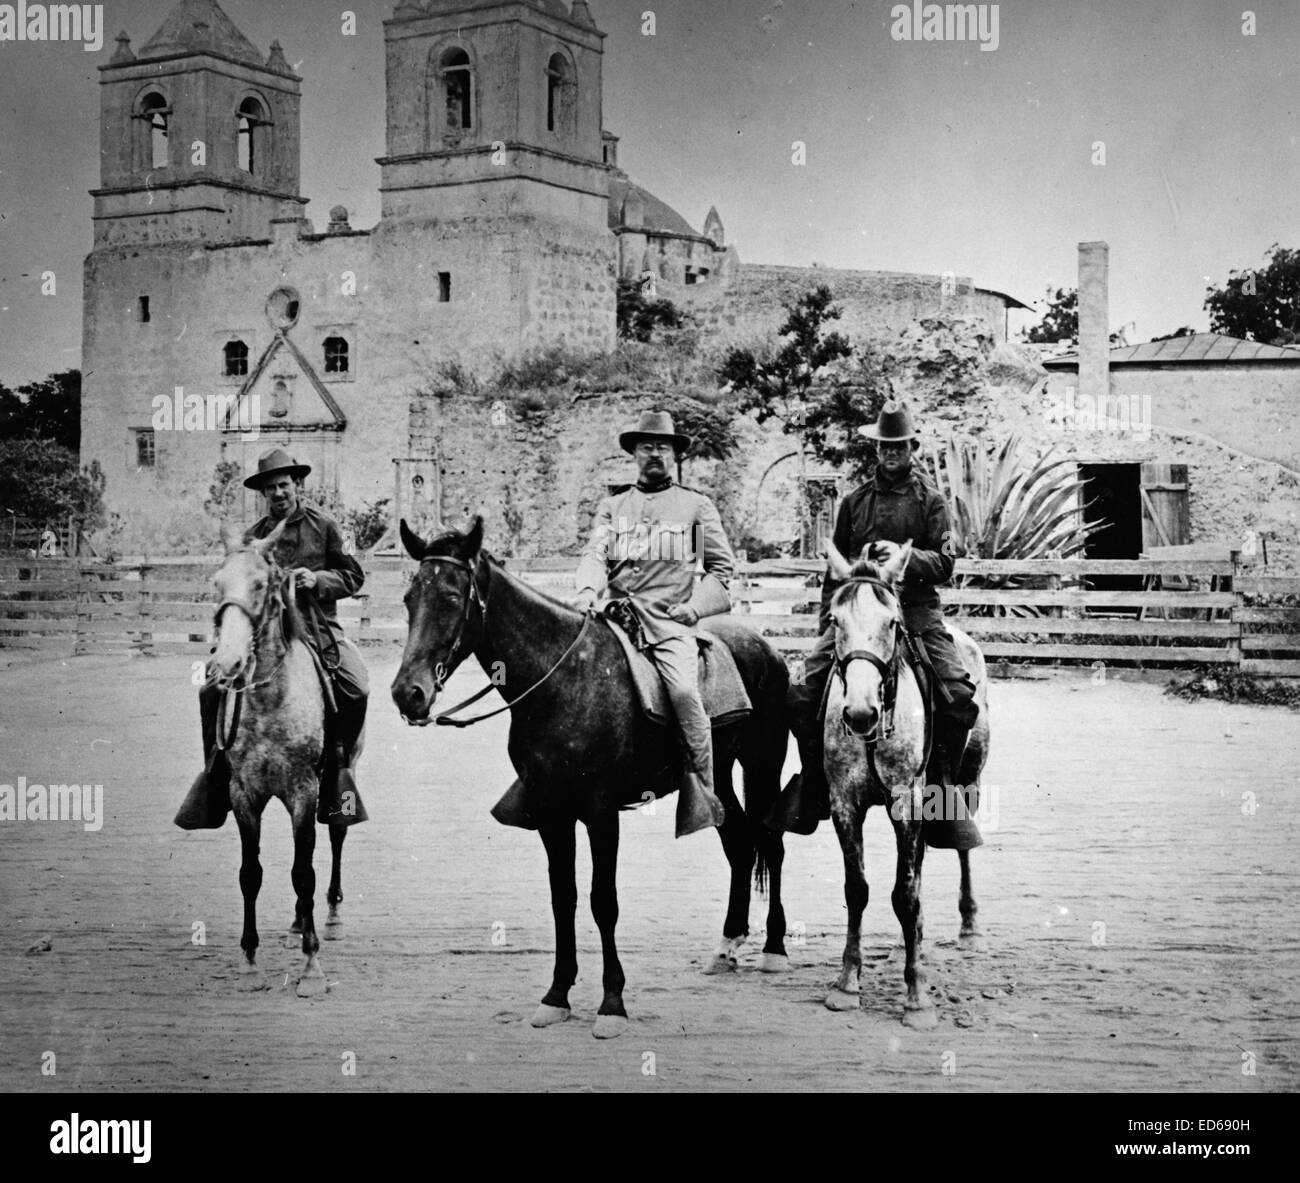 Theodore Roosevelt stellte auf dem Pferderücken, in Uniform, vor der Kirche San Antonio, Texas, während des Spanisch-Amerikanischen Krieges 1898 Stockfoto